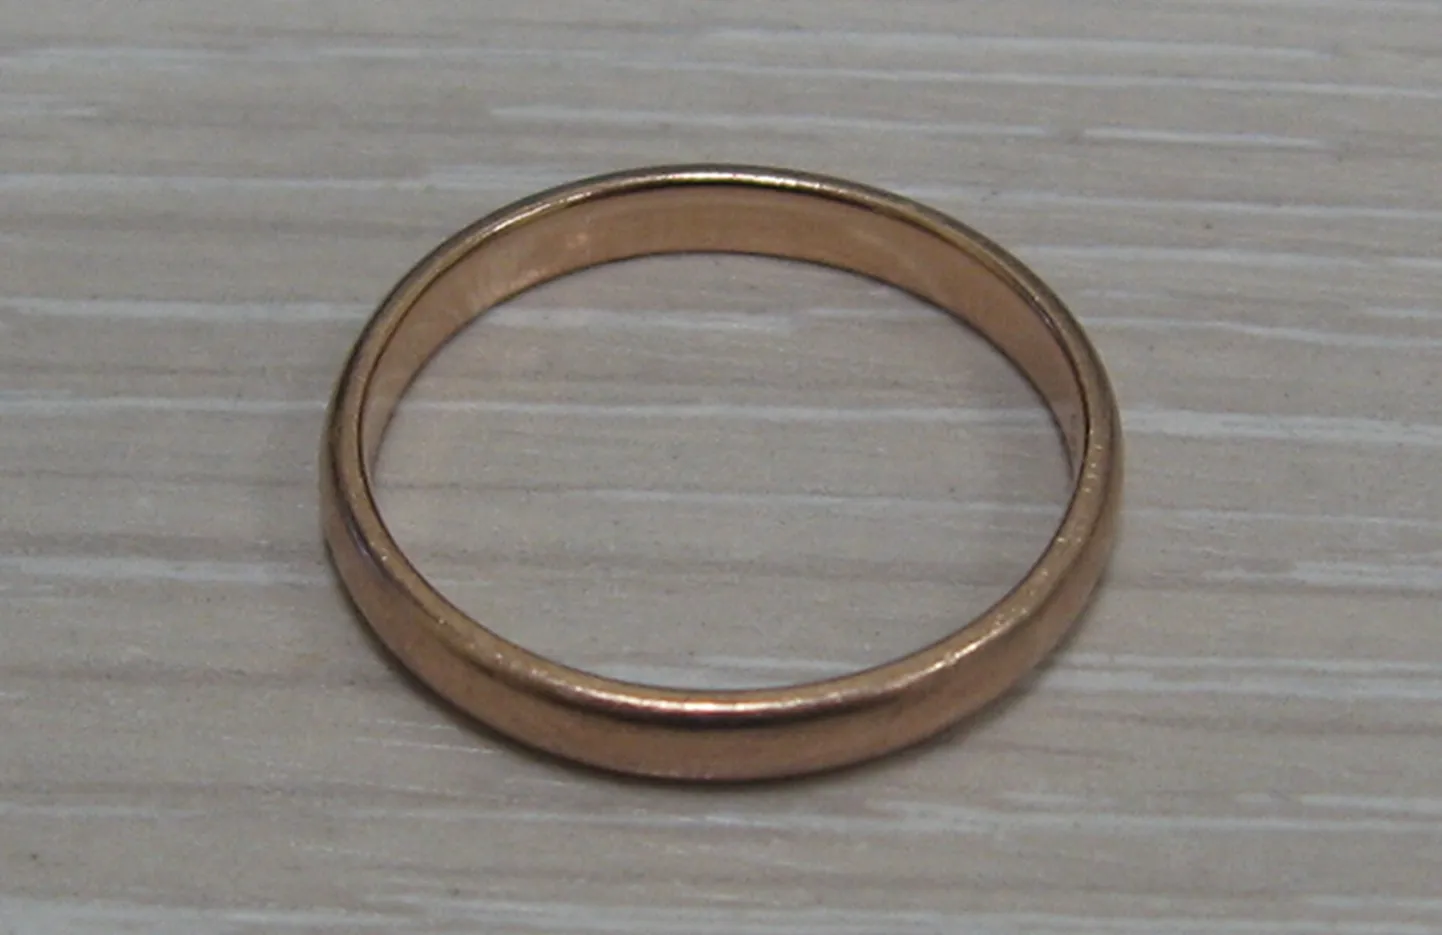 В торговом центре Solaris найдено обручальное кольцо.